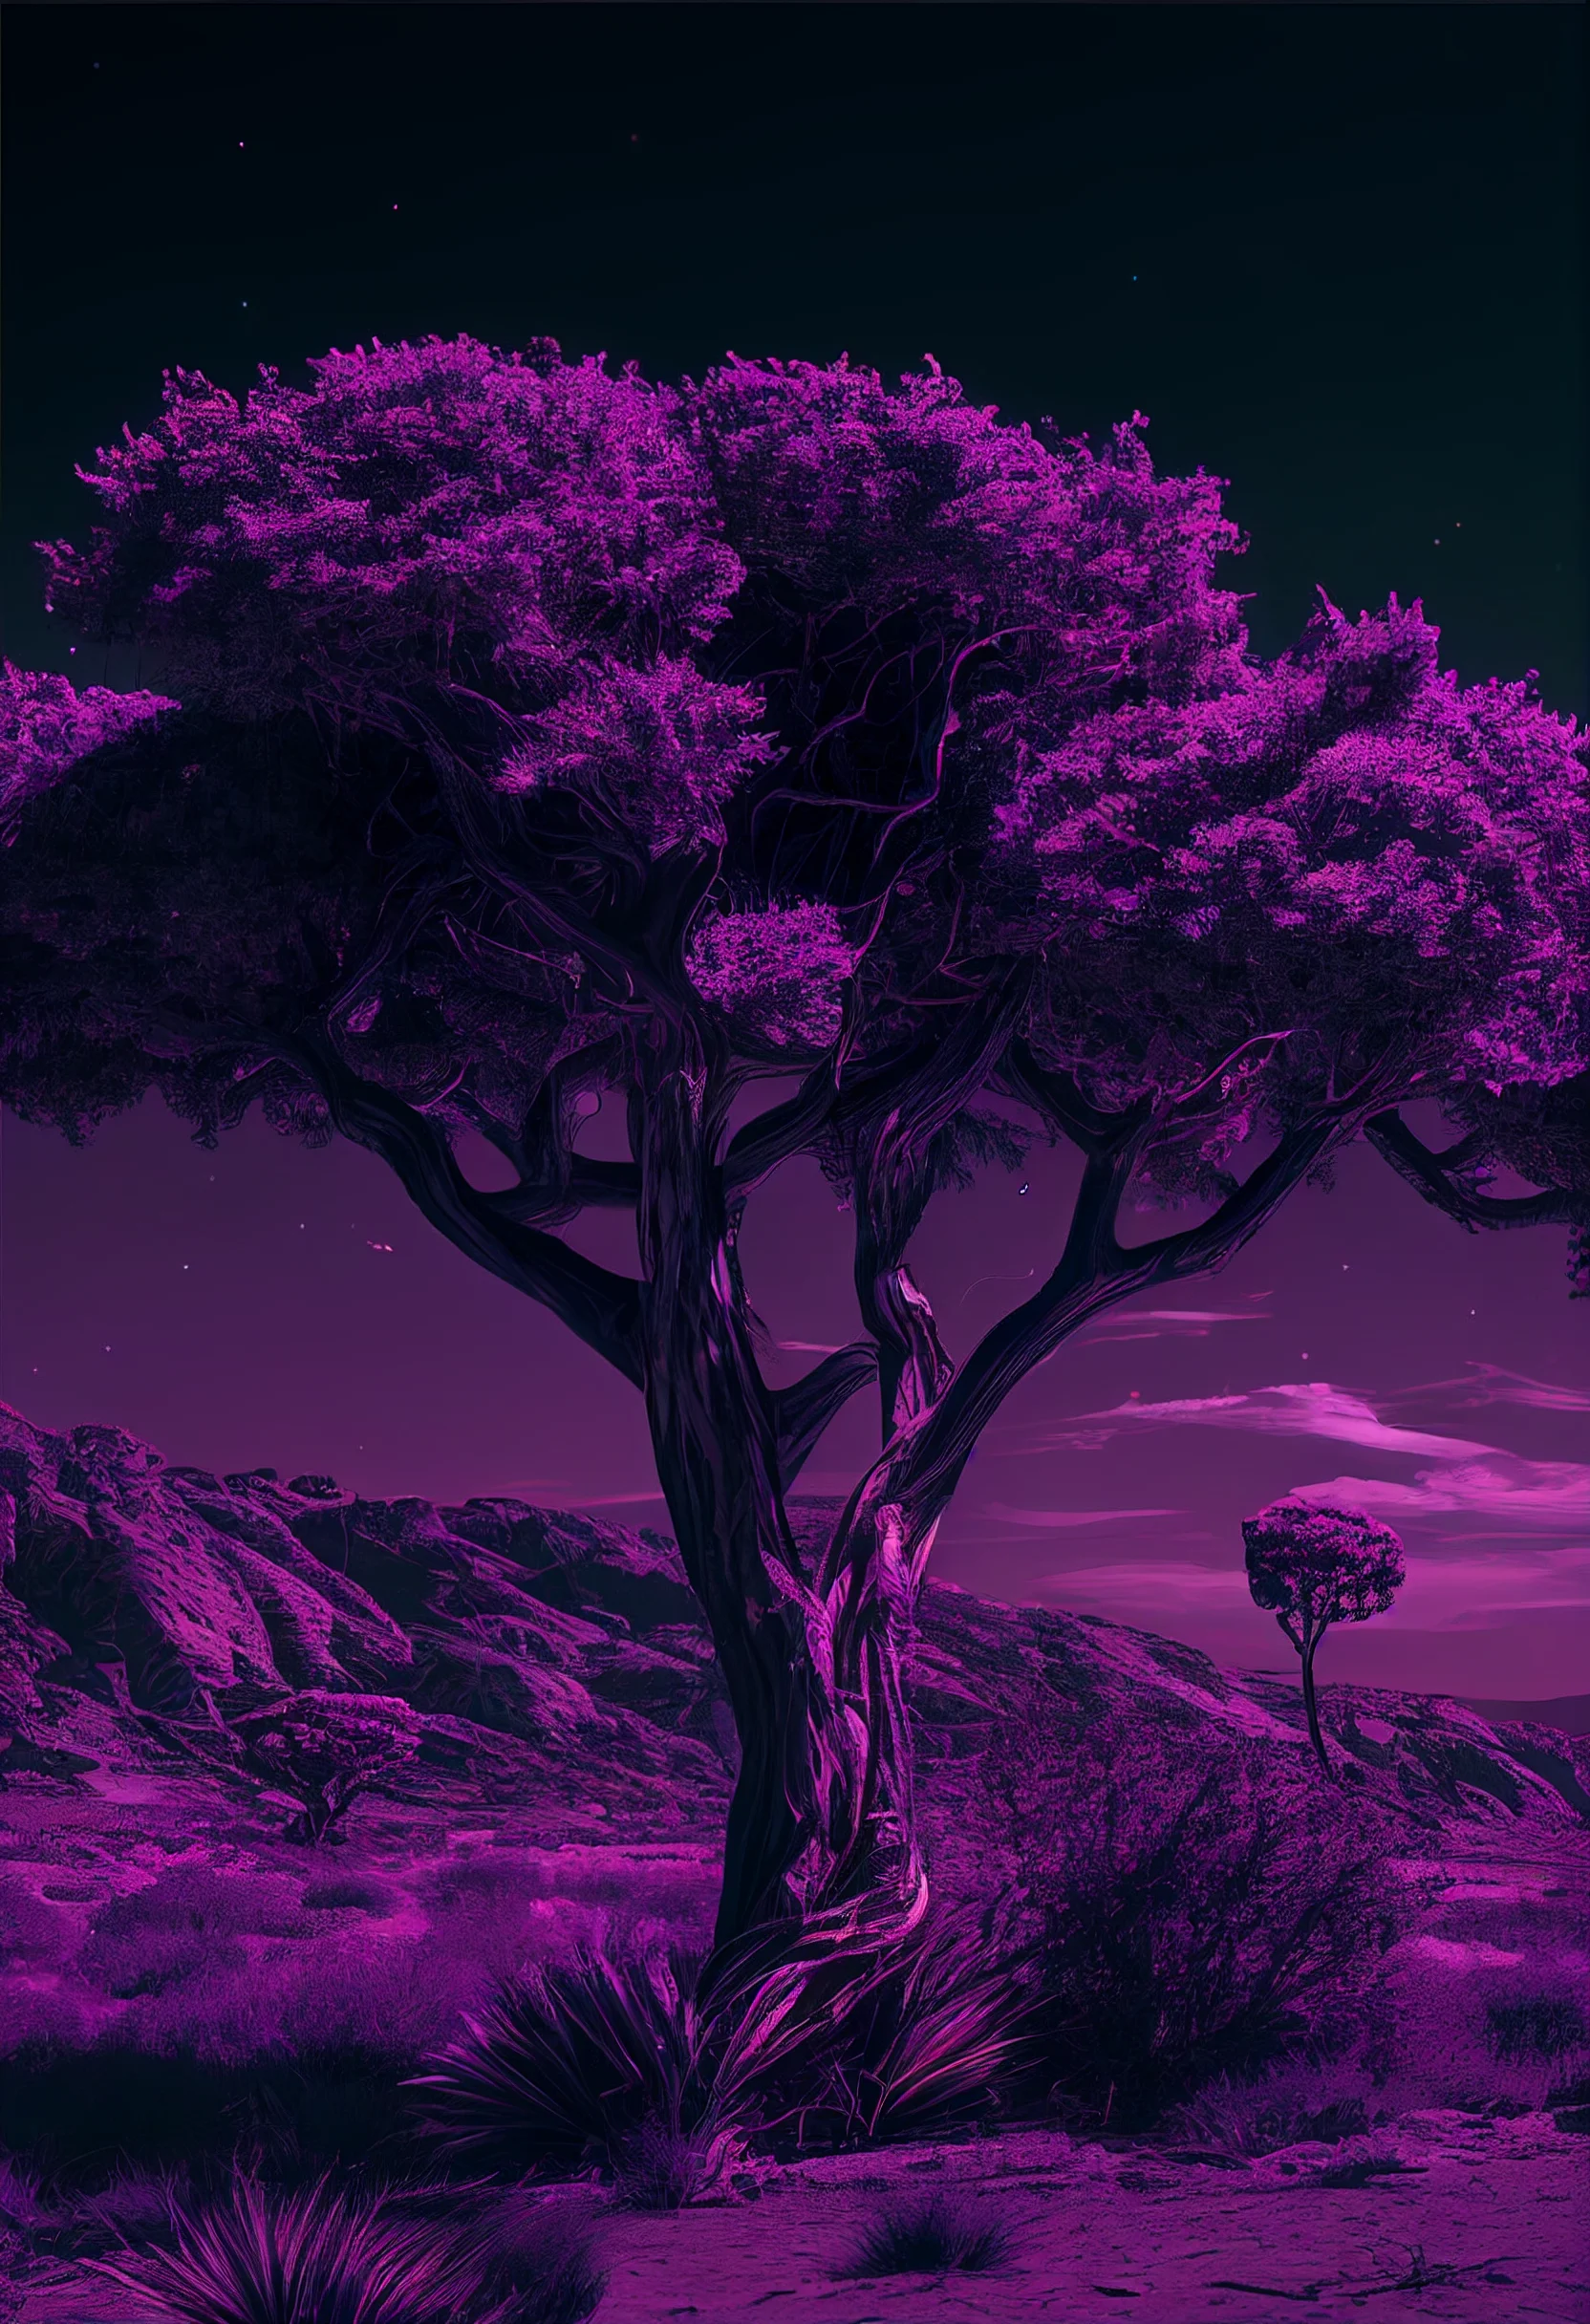 A purple tree in a purple landscape - Trippy